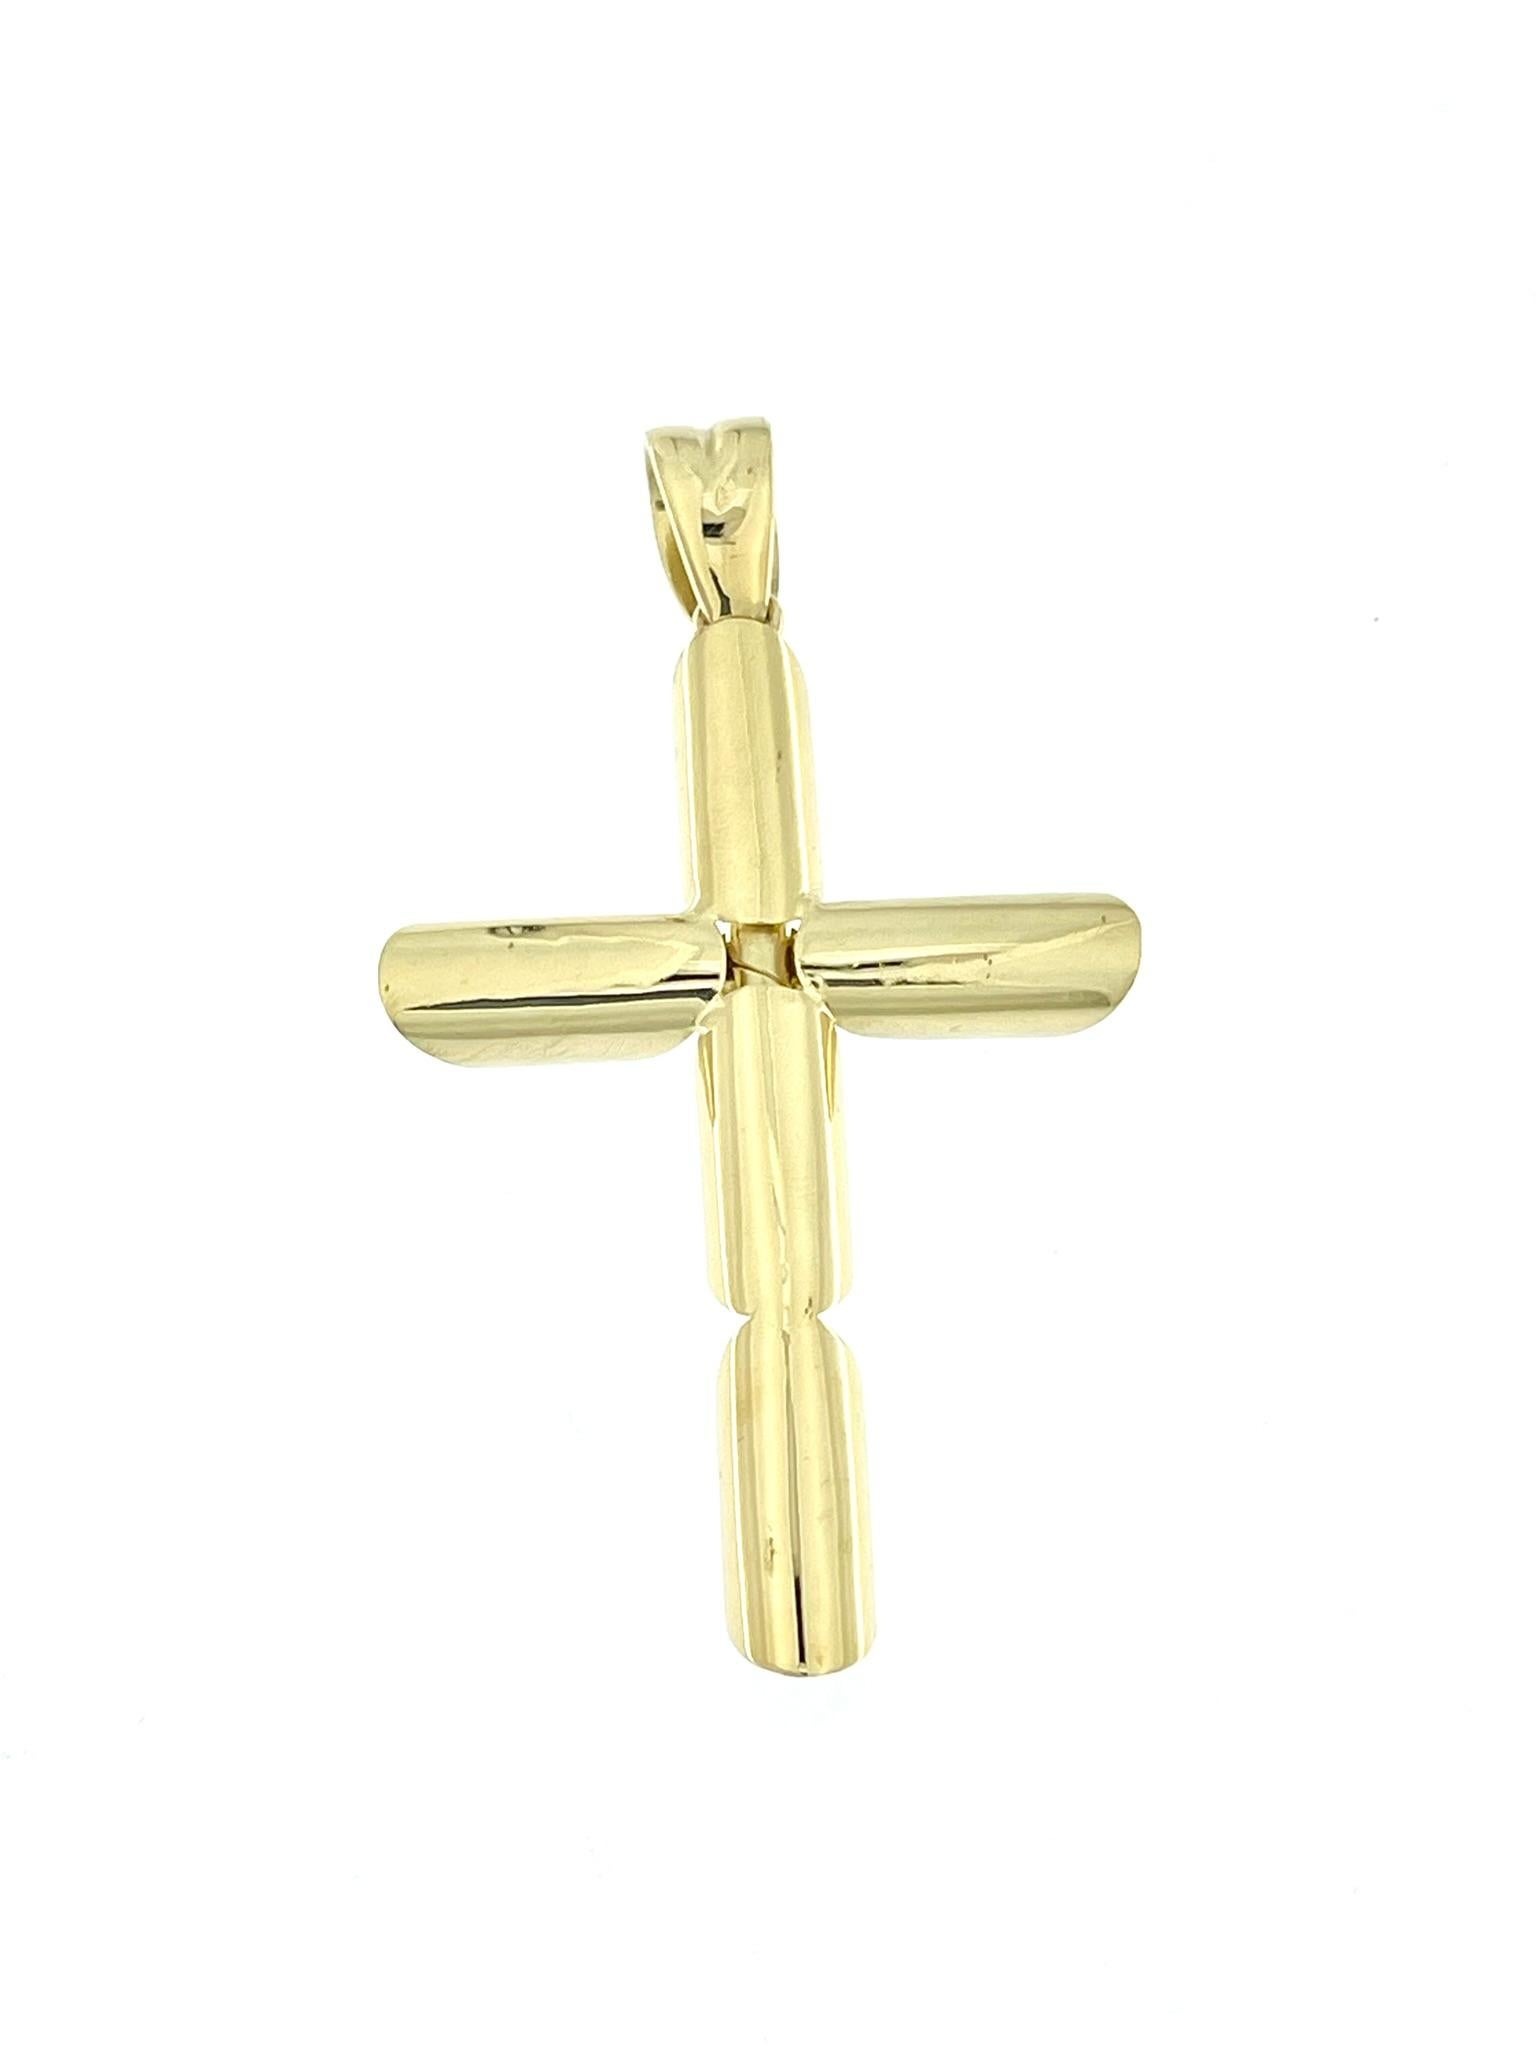 Contemporain Croix italienne moderne de conception tubulaire en or jaune en vente